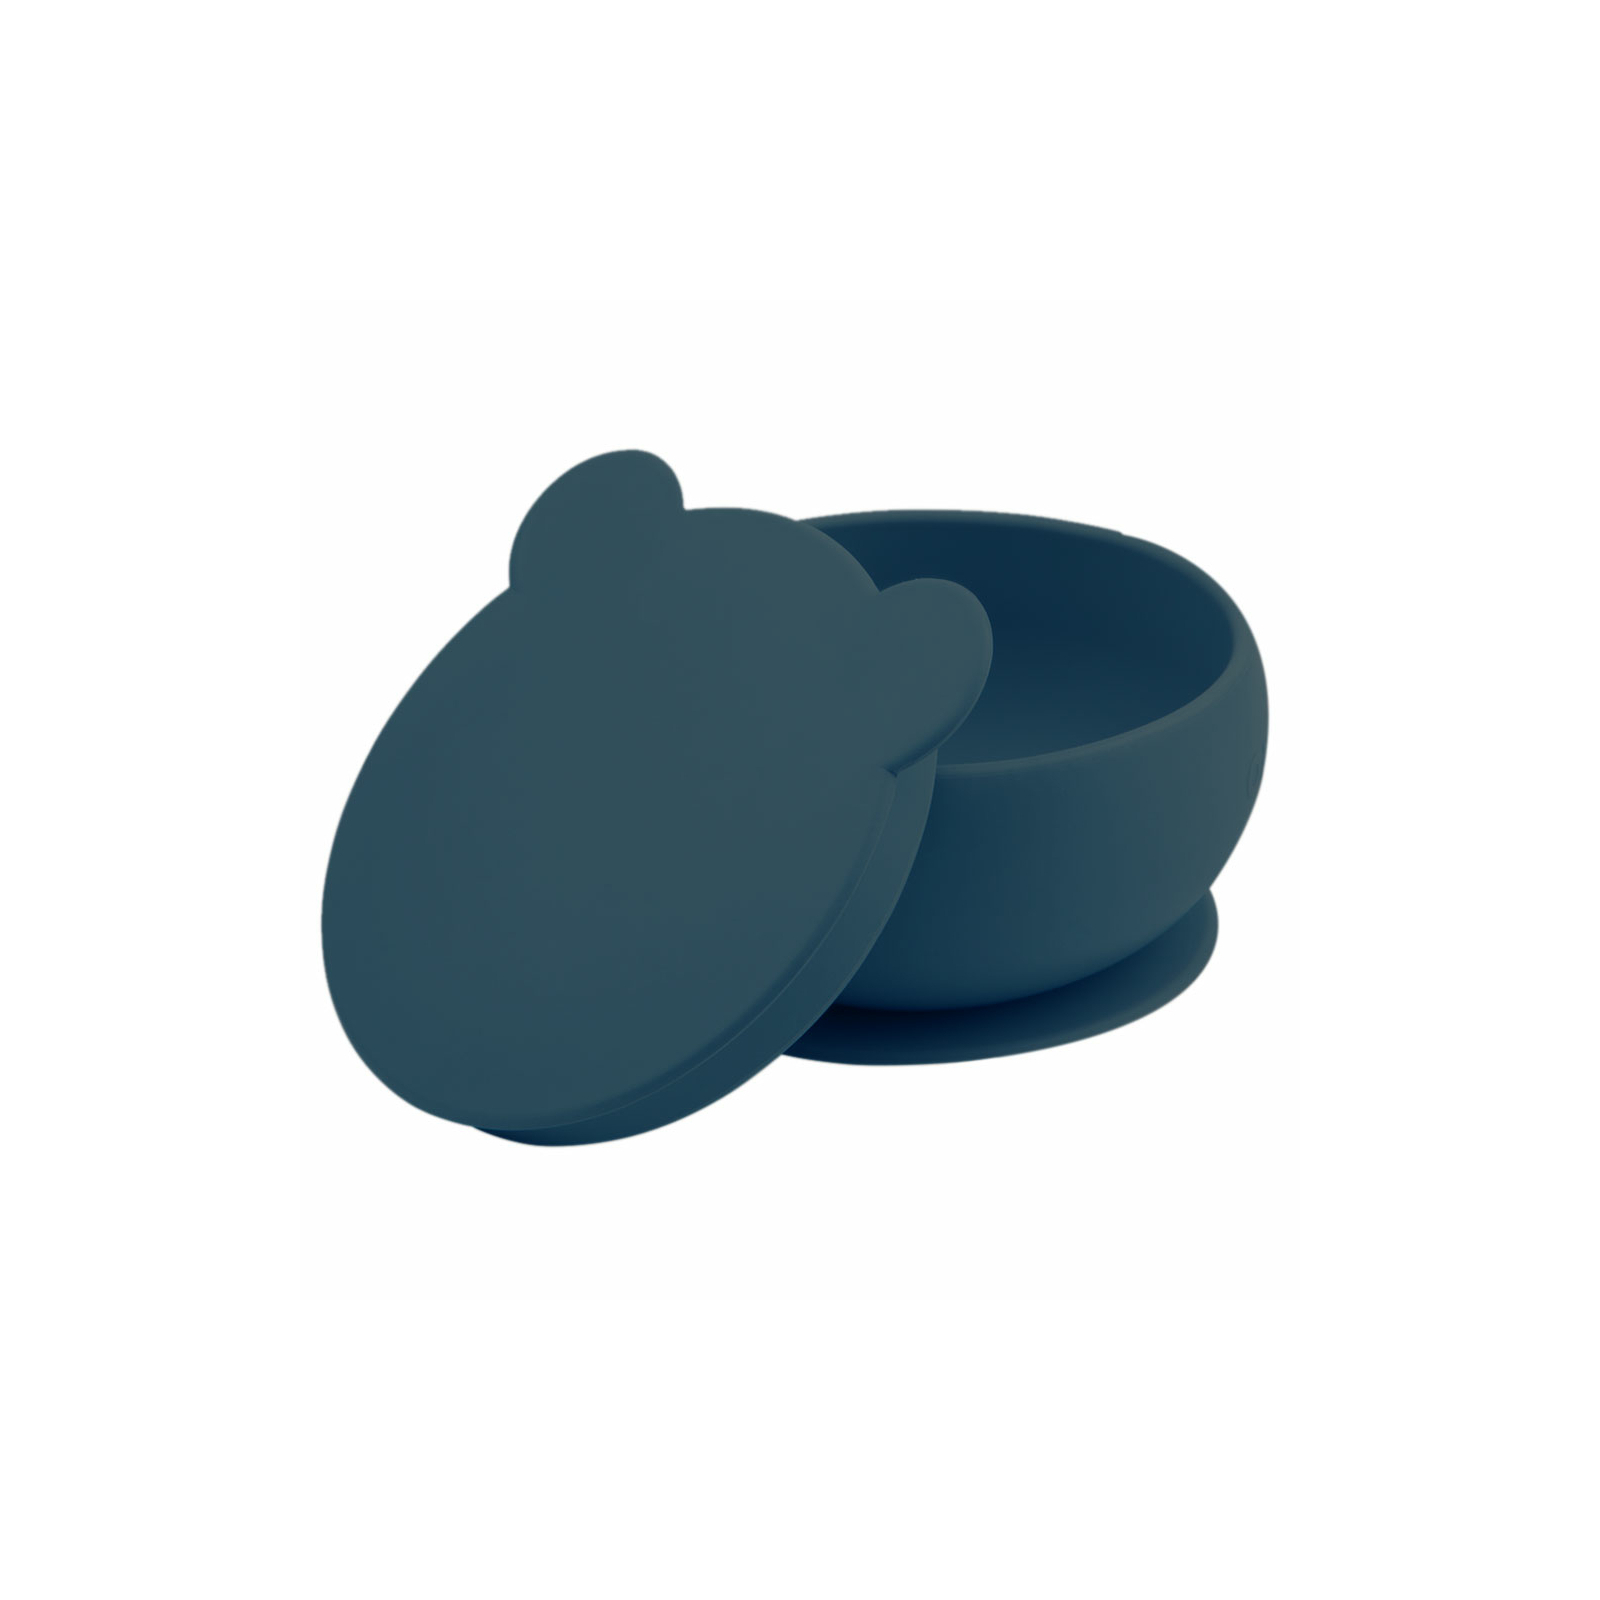 Тарелка детская MinikOiOi Bowly глубокая с крышкой на присоске Deep Blue (101080010) изображение 2